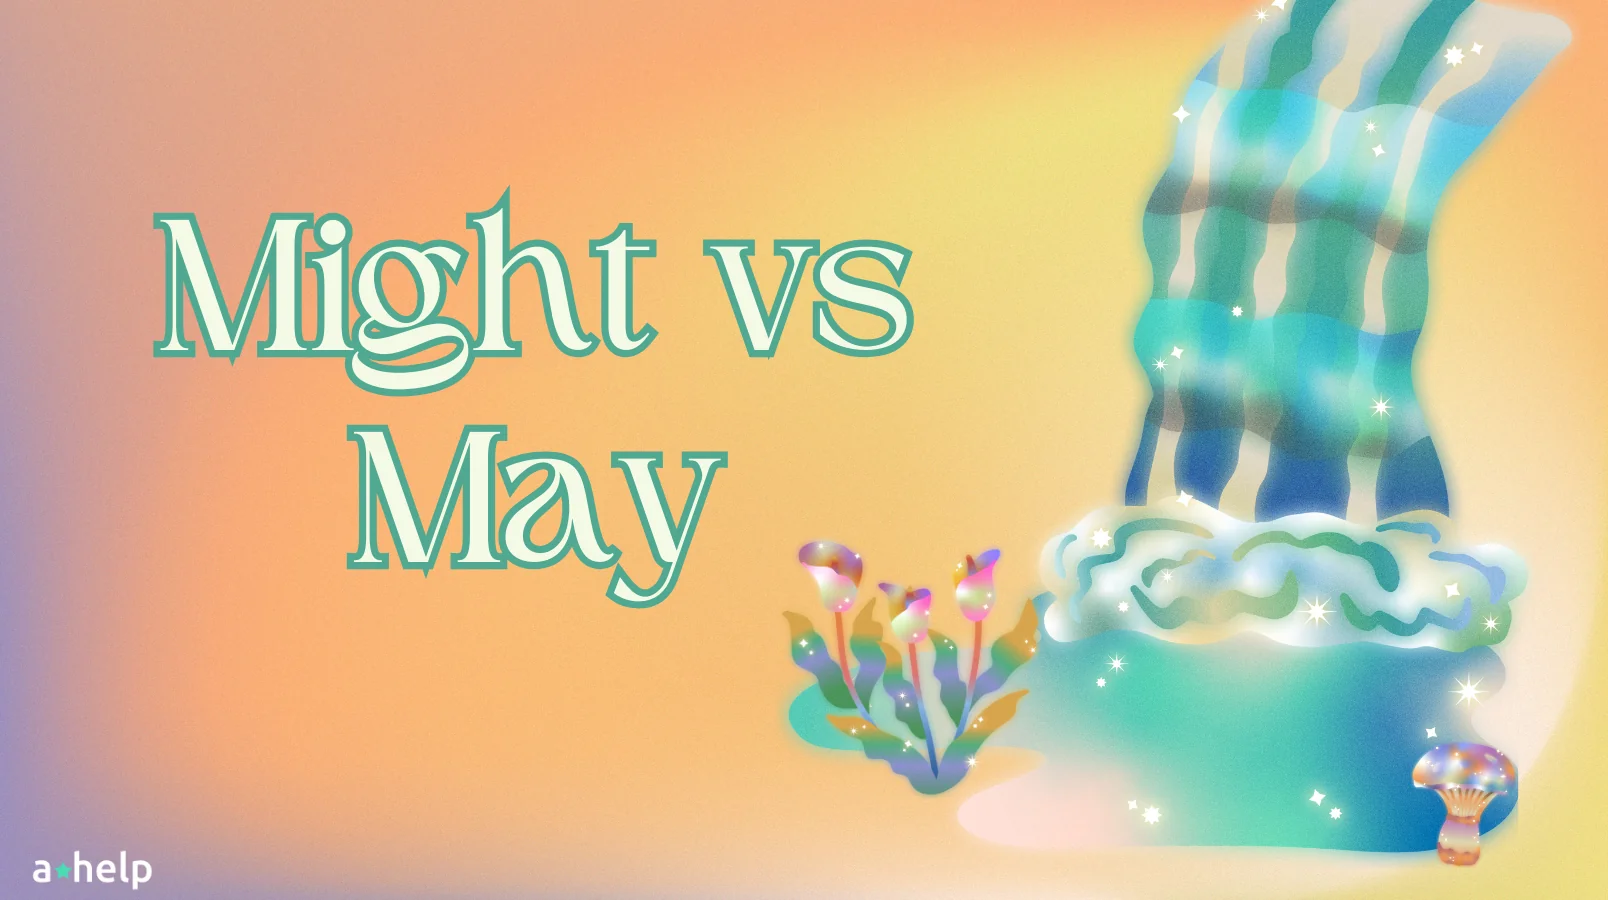 Might vs May